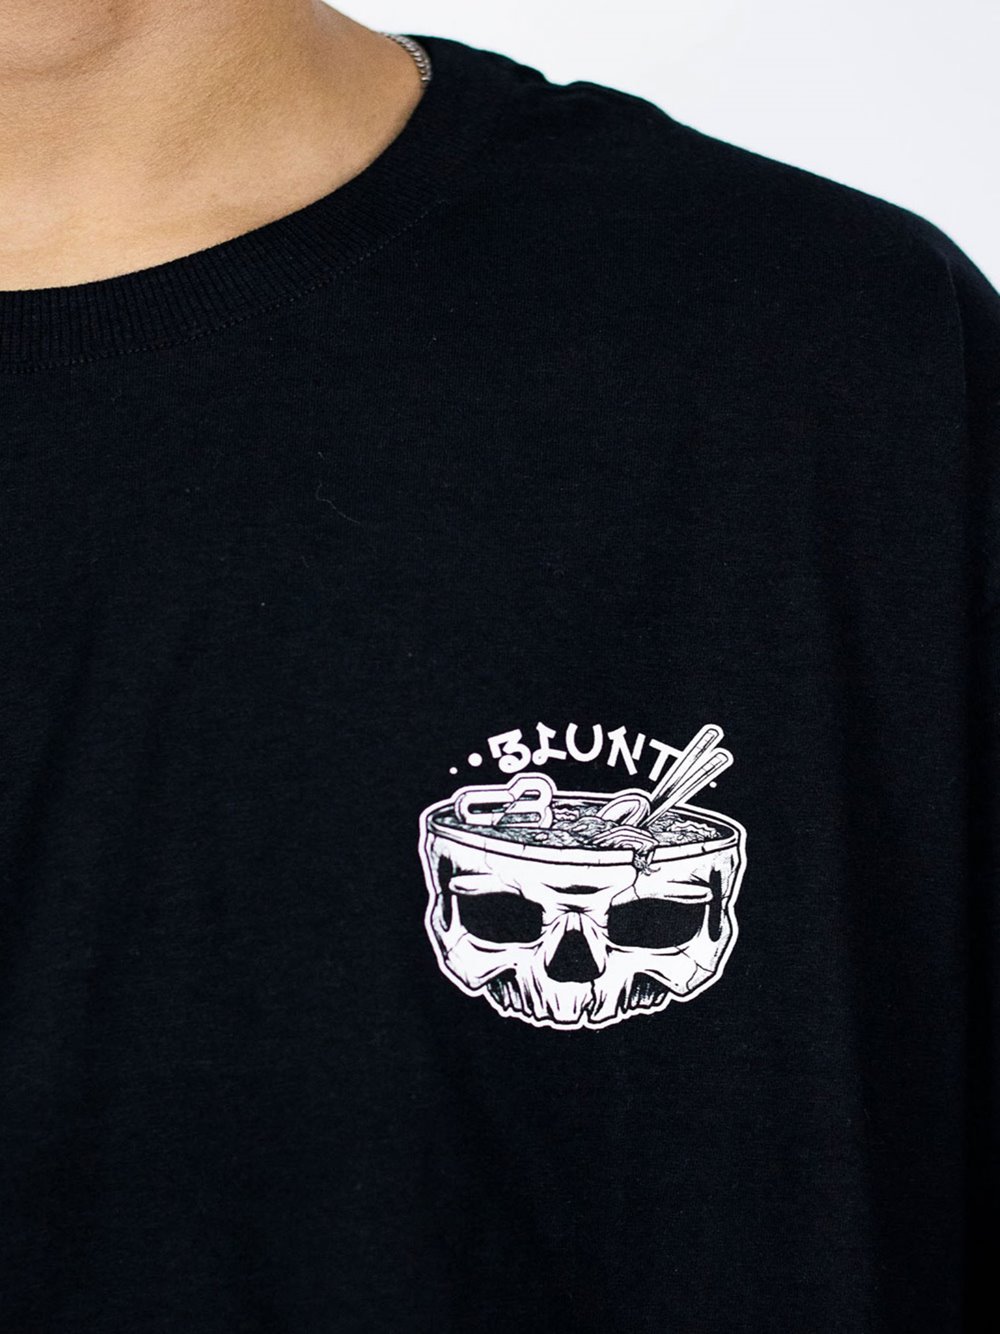 Camiseta Blunt Oversized - Comprar em Skull Shop Br